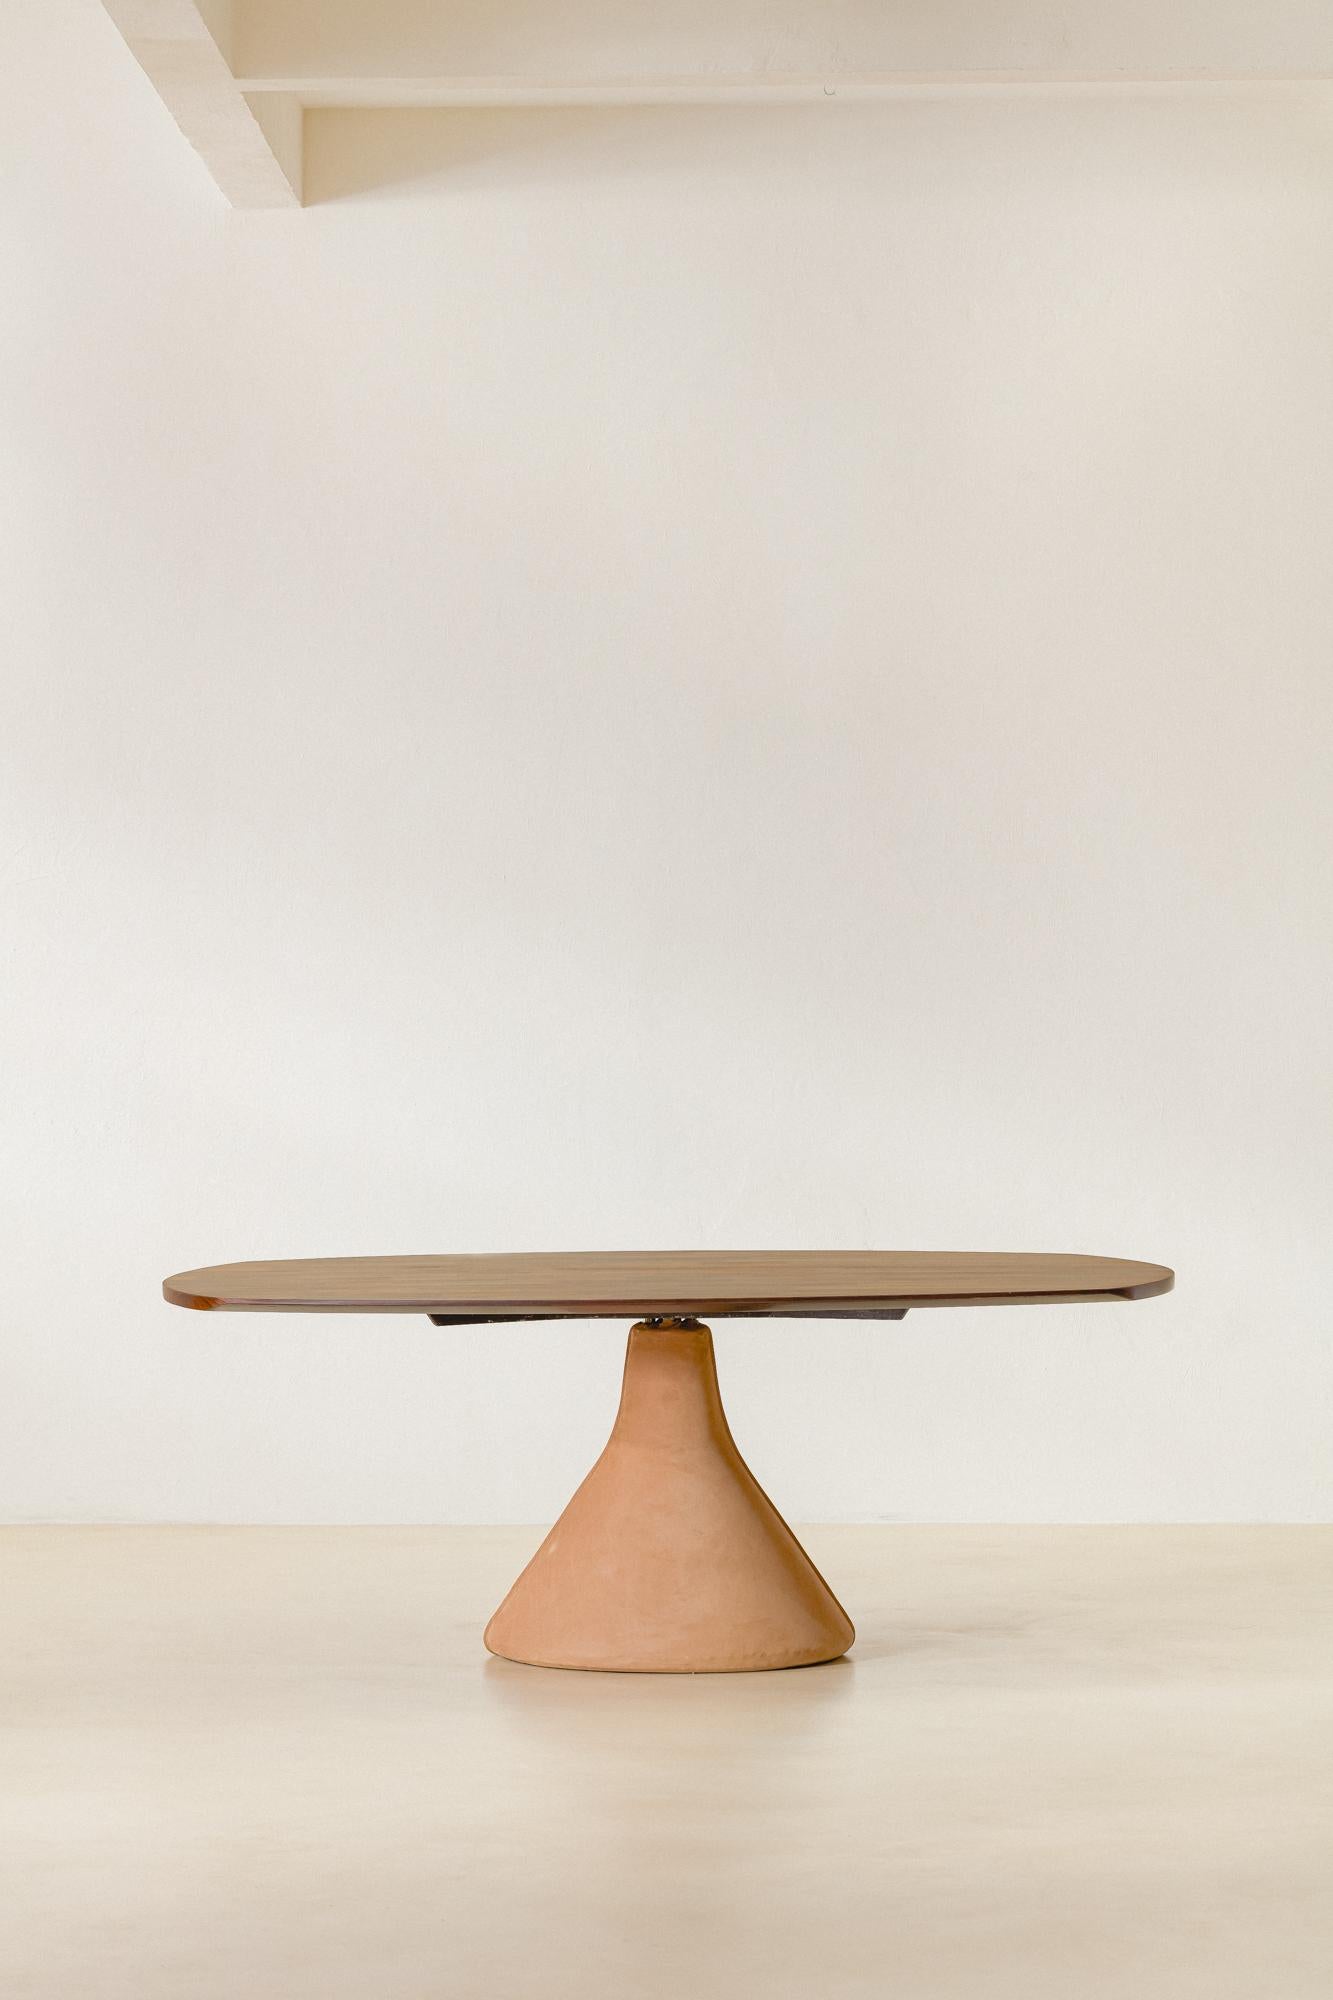 L'emblématique Guanabara est une table conçue par Jorge Zalszupin (1922-2020) en 1959 et produite par son entreprise, L'atelier. Un plateau en patchwork de bois de rose repose sur un socle en béton recouvert de cuir nubuck souple.

Cette solution